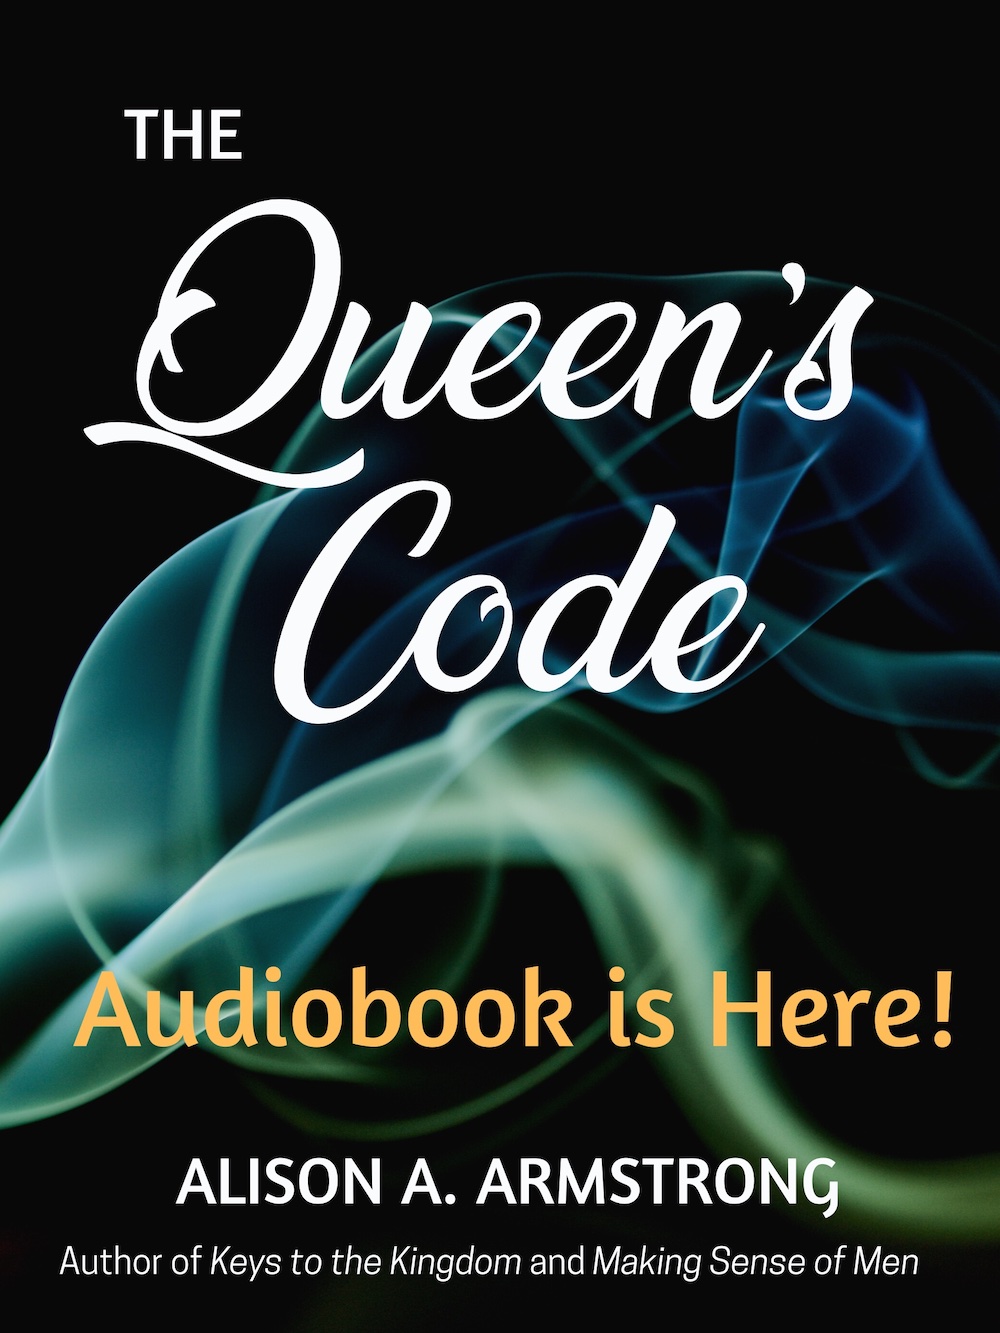 The Queen's Code Audiobook is Here